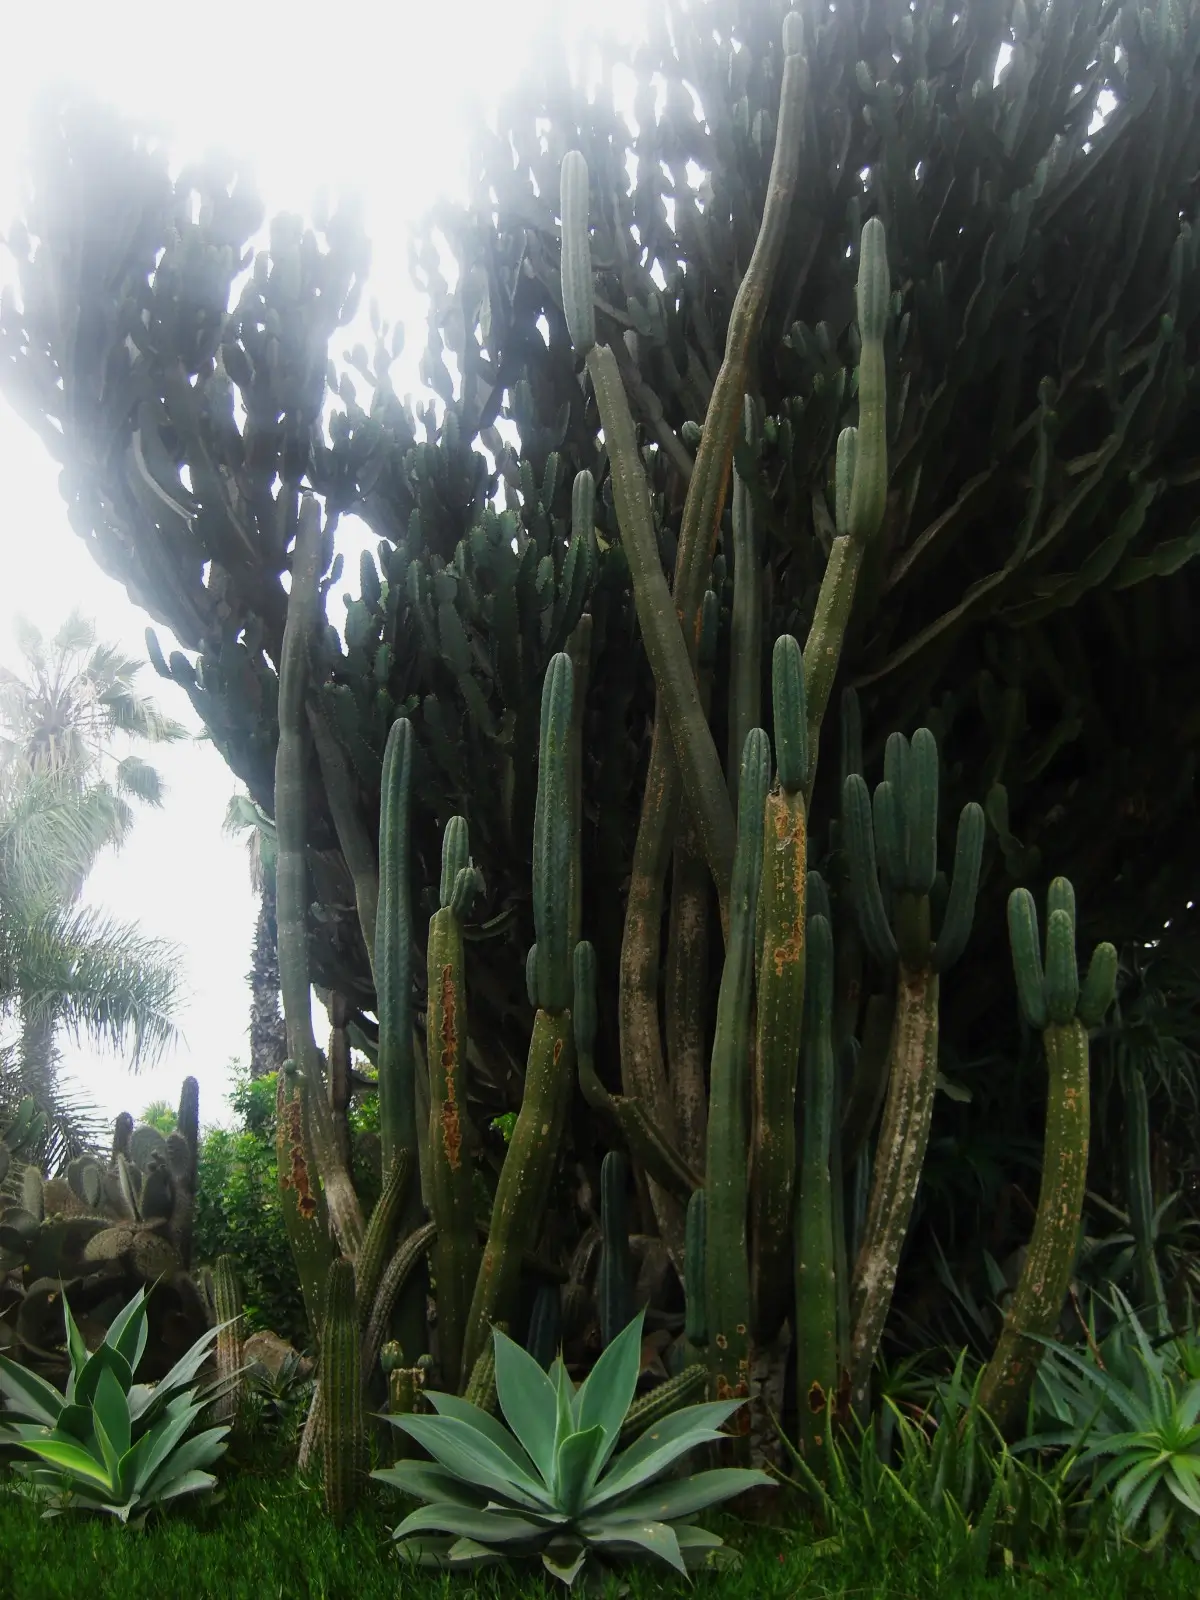 San Pedro Cactus